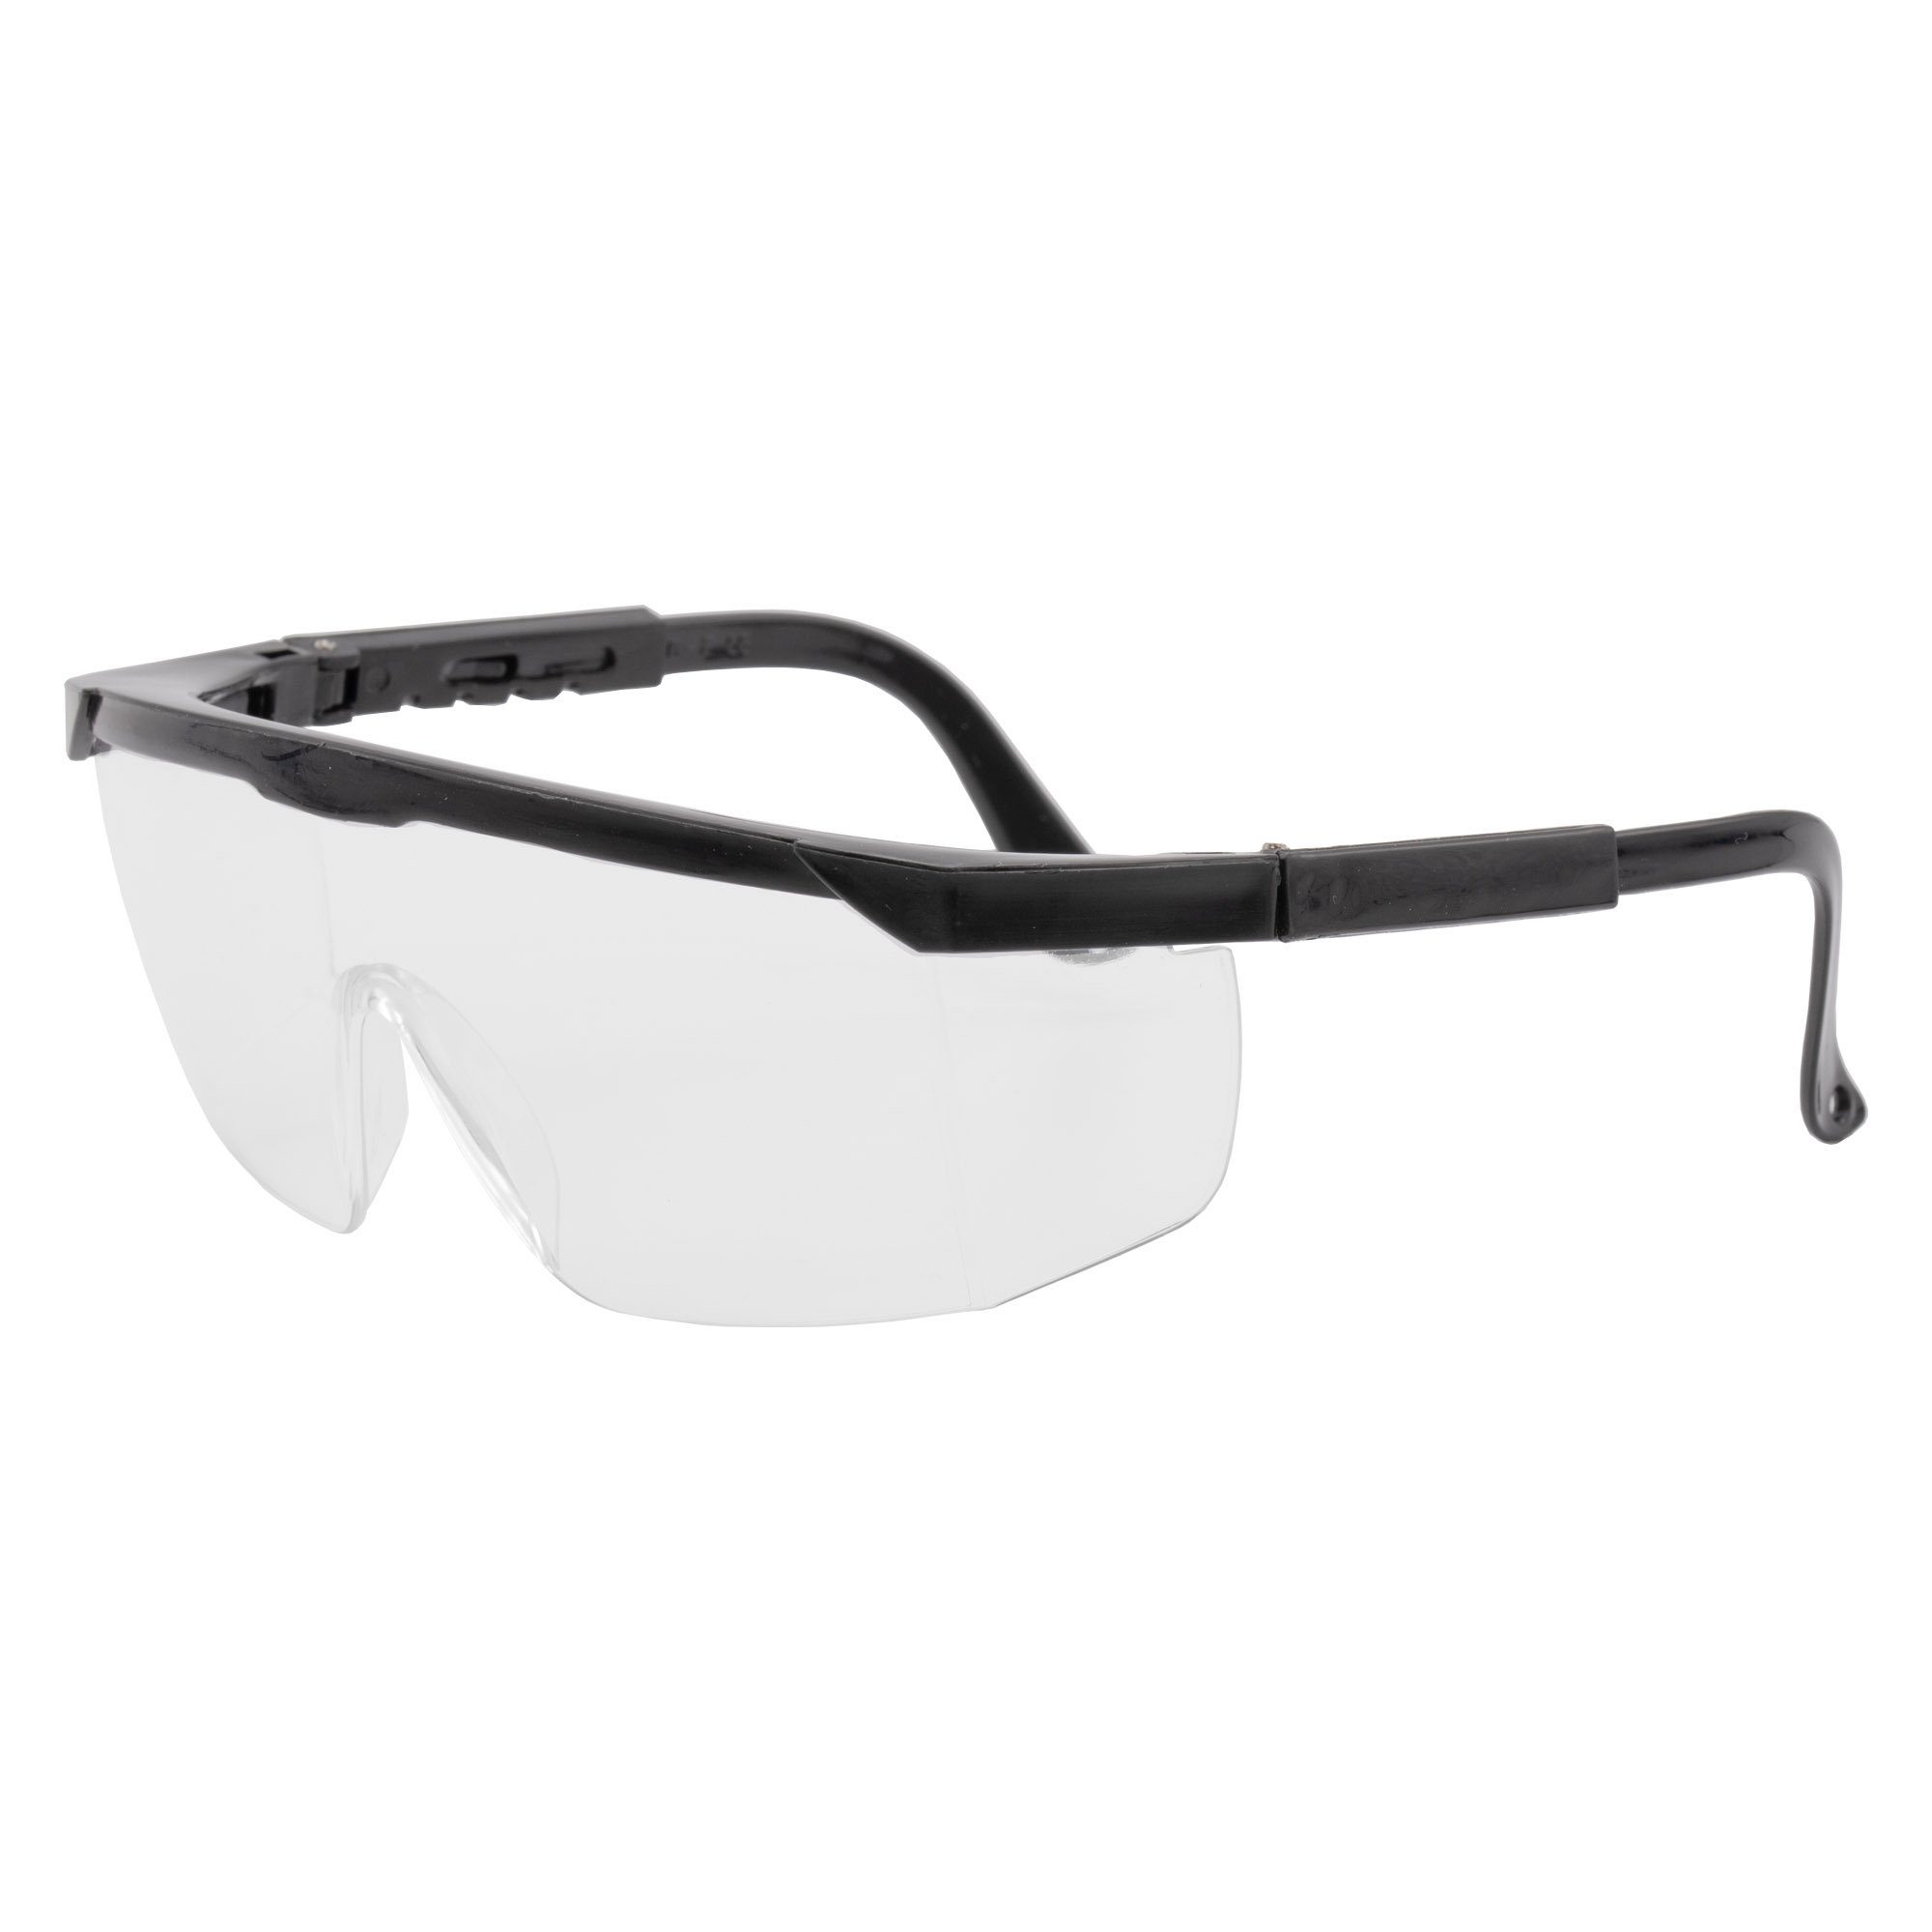 conkor Arbeitsschutzbrille 2x Schutzbrille Arbeitsbrille Augenschutz, Sicherheitsbrille Arbeitsschutzbrille